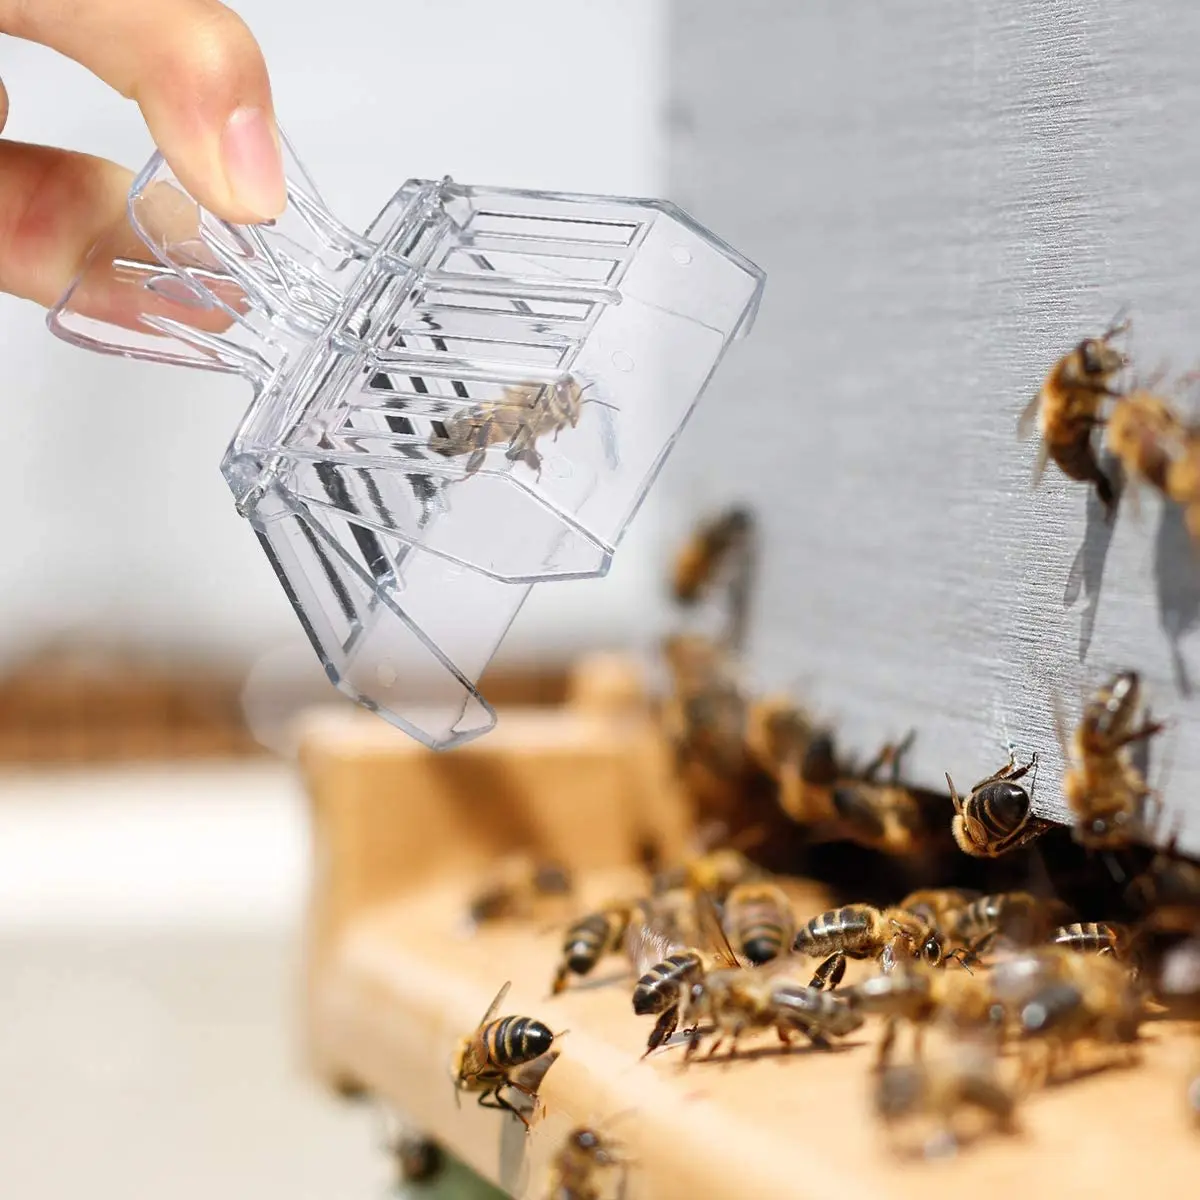 Klatka dla pszczół Bee Queen Catcher bezbarwny plastikowy klatka na królową klip pokój izolacyjny sprzęt pszczelarski narzędzia pszczelarskie